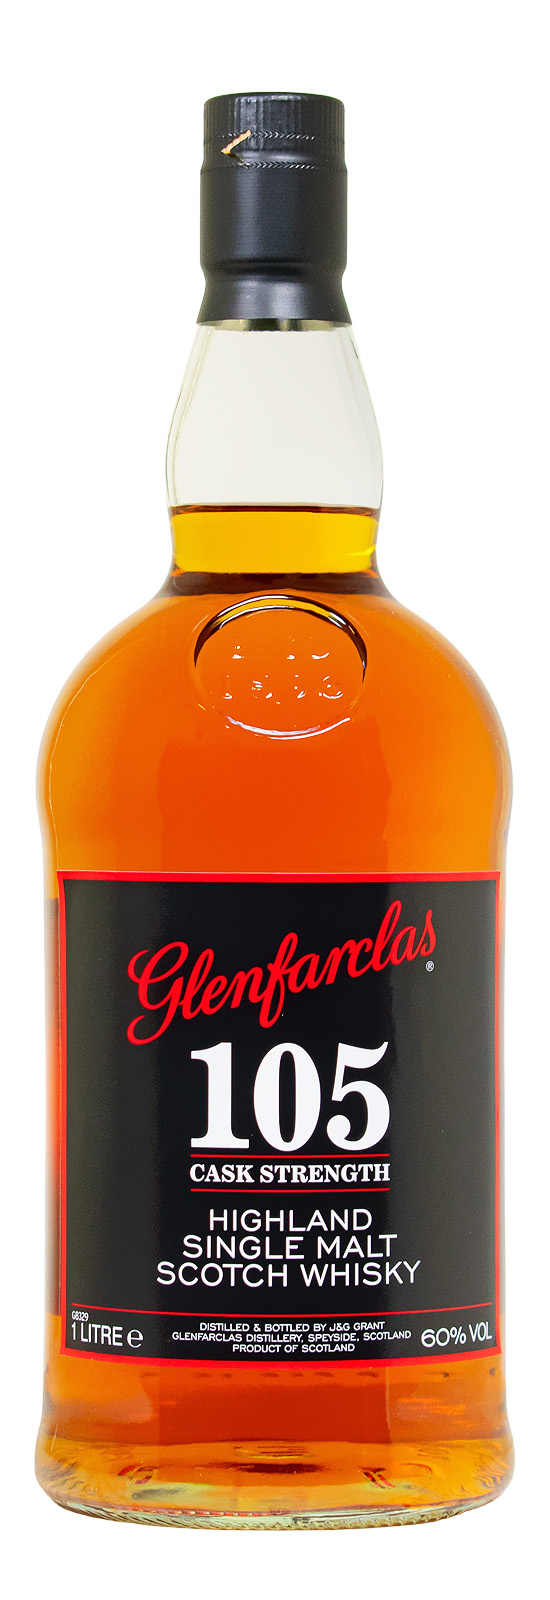 Glenfarclas 105 Cask Strength Single Malt Scotch Whisky - 1 Liter 60% vol